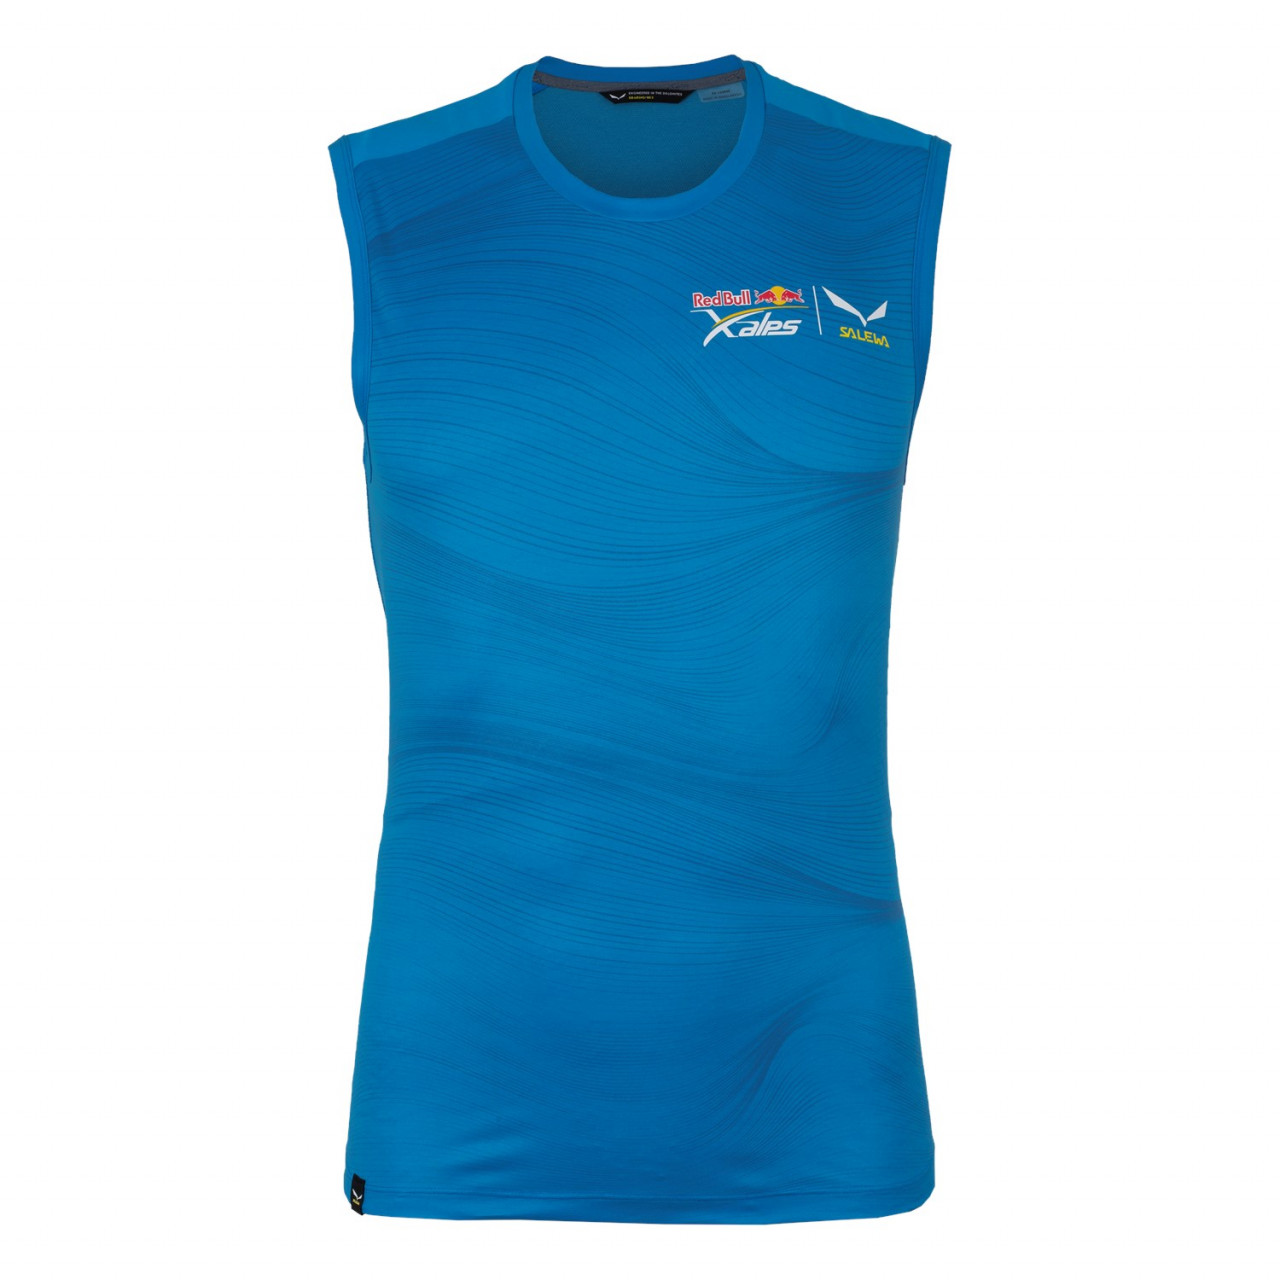 Salewa X-Alps Argentina - Camiseta De Tirantes Hombre - Azules - AXWQ-58617